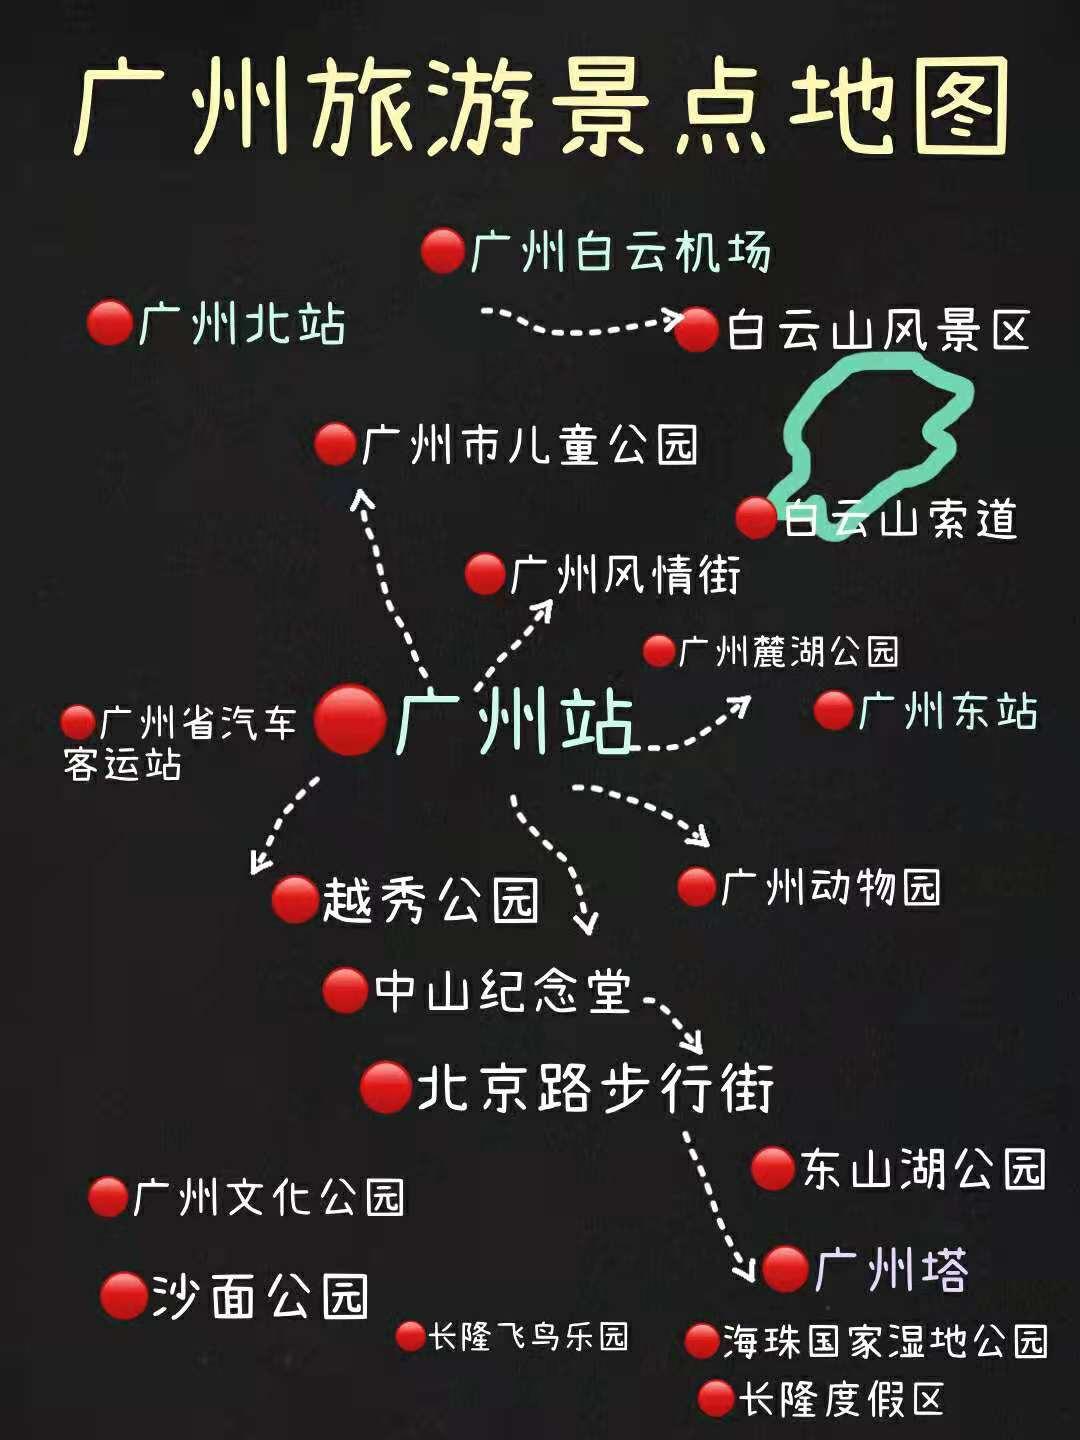 广州旅游行李寄存攻略景点地图地铁沿线景点大全